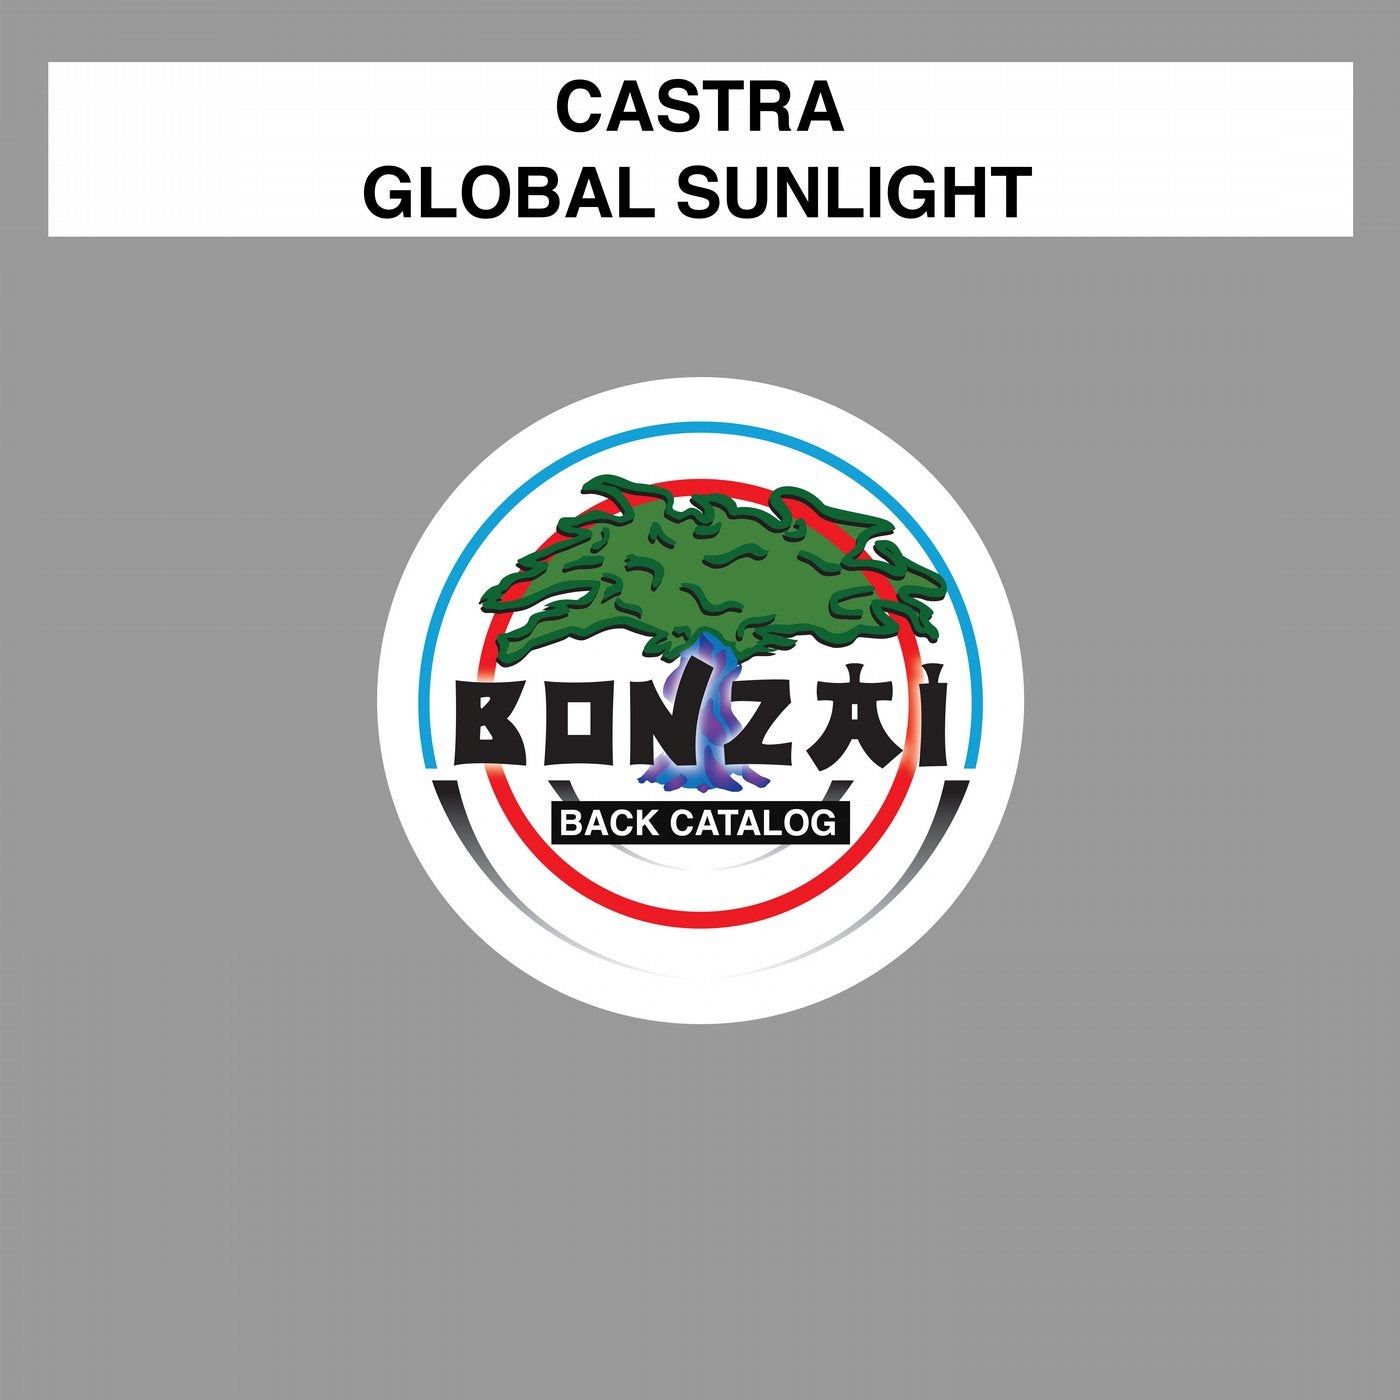 Global Sunlight